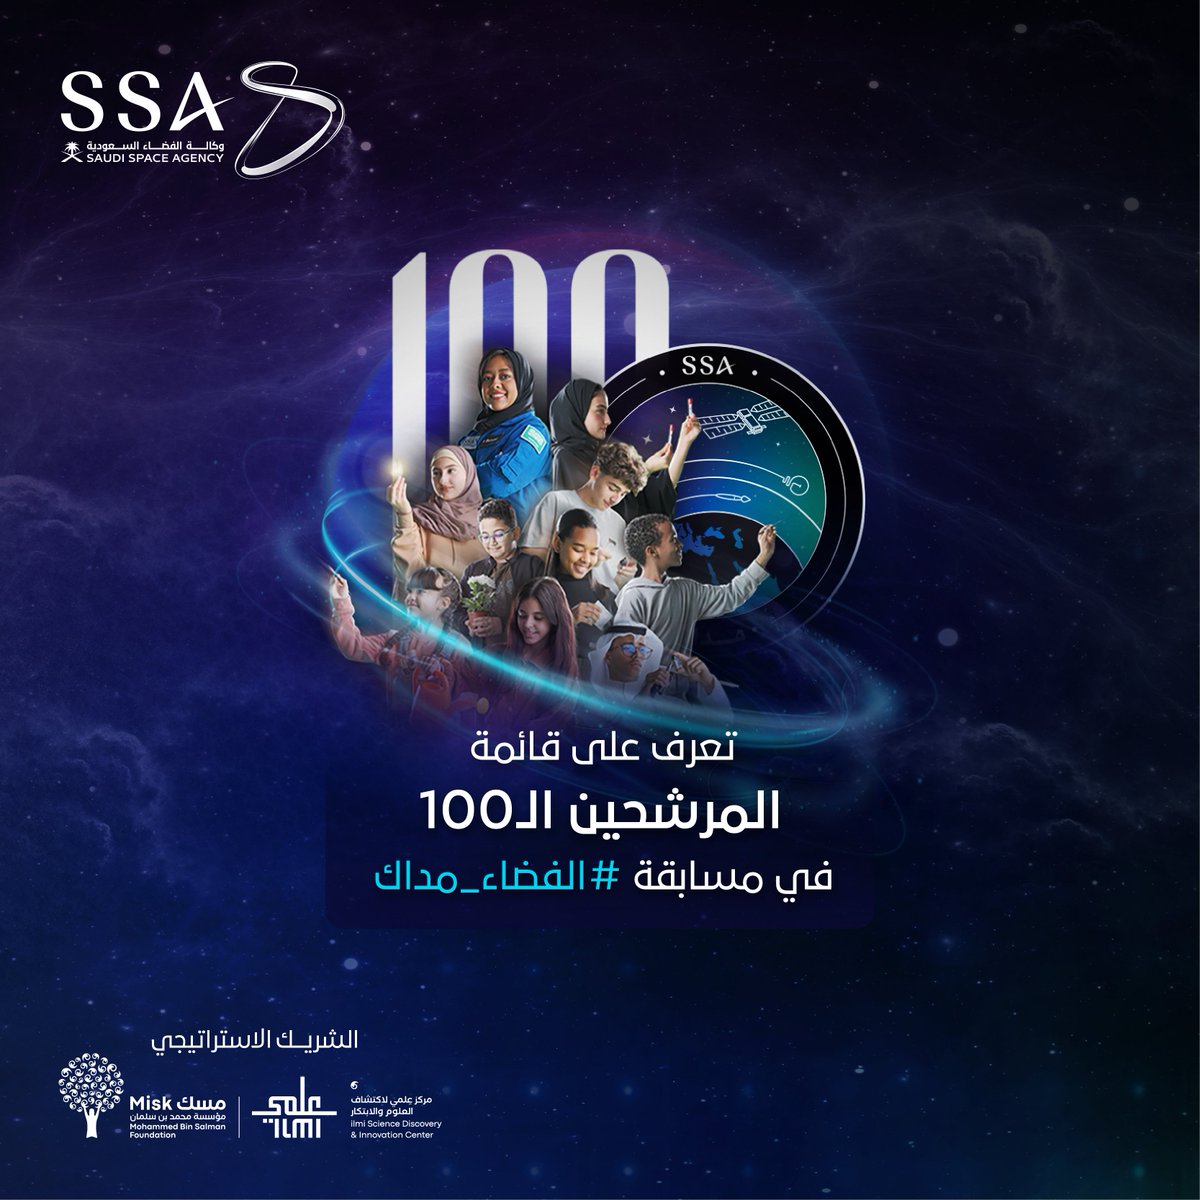 قائمة المتأهلين الـ100 من المبدعين العرب الذين قدموا إبداعهم في مسابقة #الفضاء_مداك، وتأهلوا للمراحل النهائية. للاطلاع على أسماء المتأهلين، يرجى زيارة الرابط التالي: ssa.gov.sa/madak/candidat…